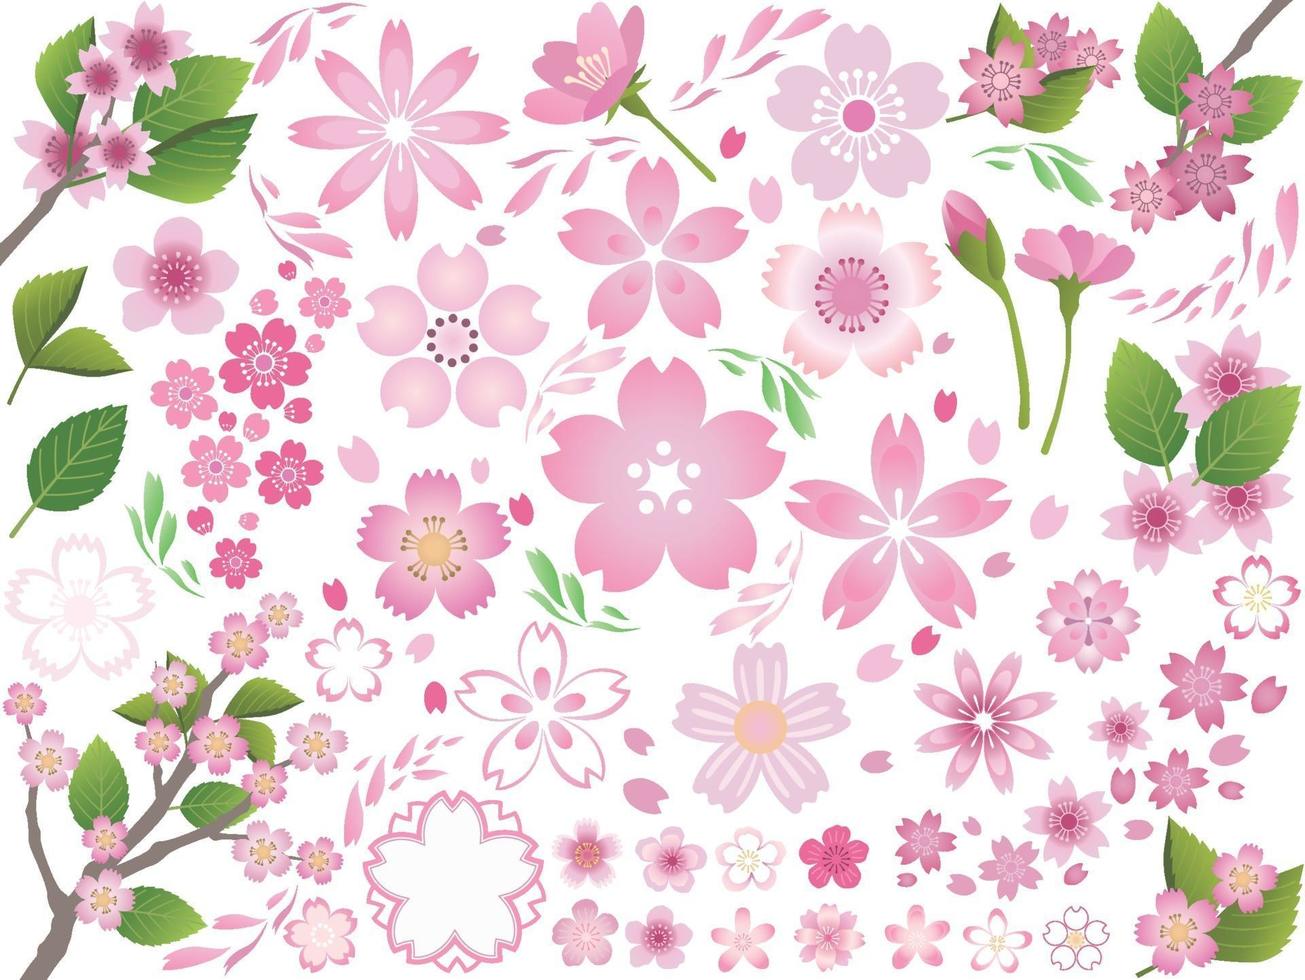 conjunto de elementos gráficos de flores de cerejeira isolado em um fundo branco. ilustração vetorial. vetor